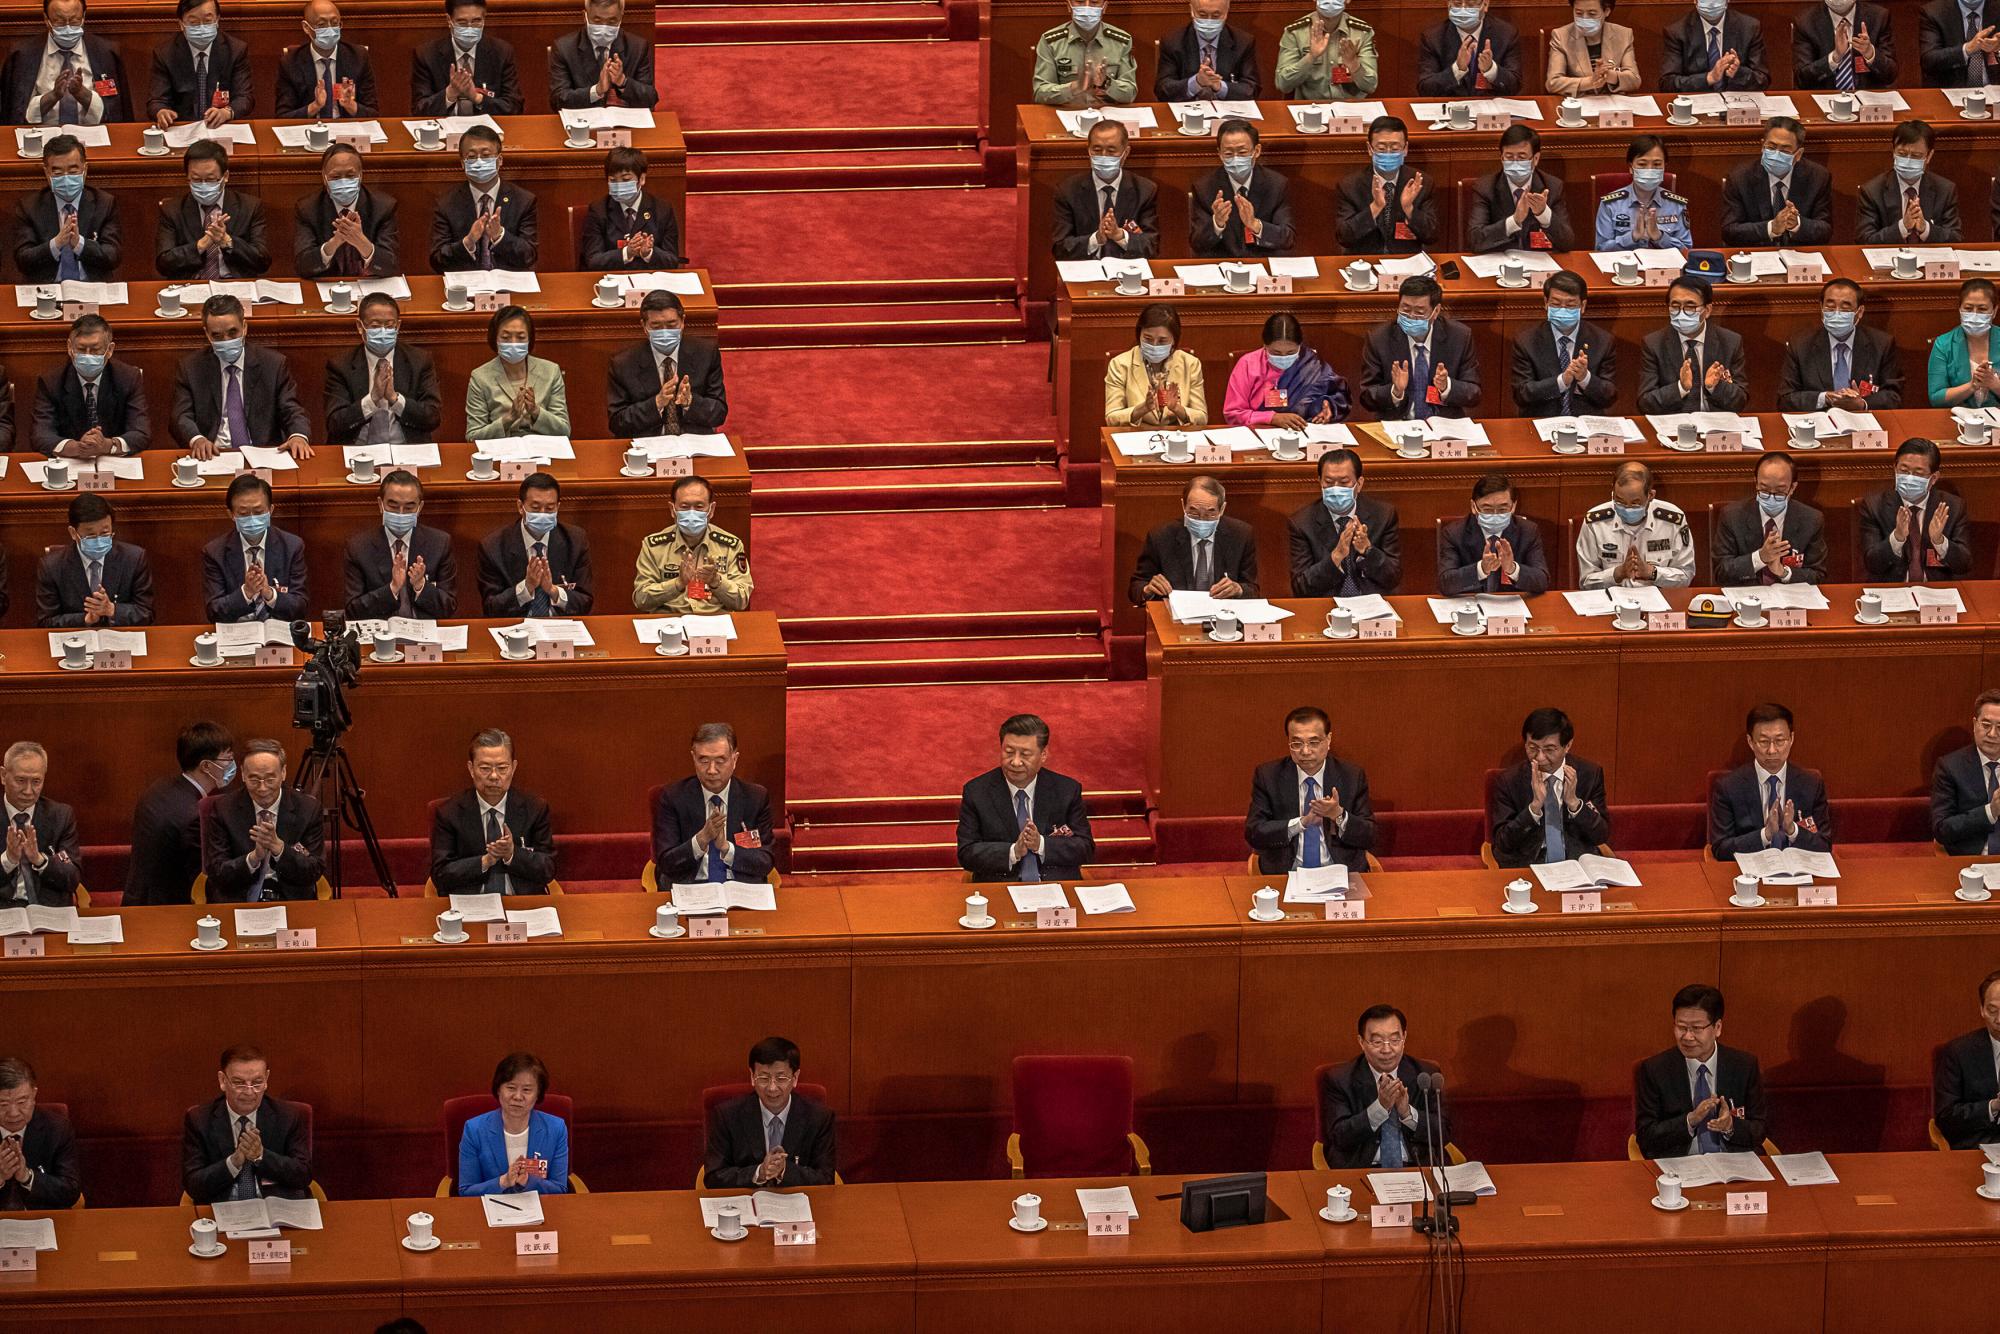 El presidente chino, Xi Jinping, centro, y el primer ministro Li Keqiang, cuarto a la derecha en la segunda fila, con otros delegados asisten a la segunda sesión plenaria del Congreso Nacional del Pueblo (APN) de China en el Gran Salón del Pueblo en Beijing el lunes 25 de mayo de 2020. (Roman Pilipey / Pool Photo vía AP)